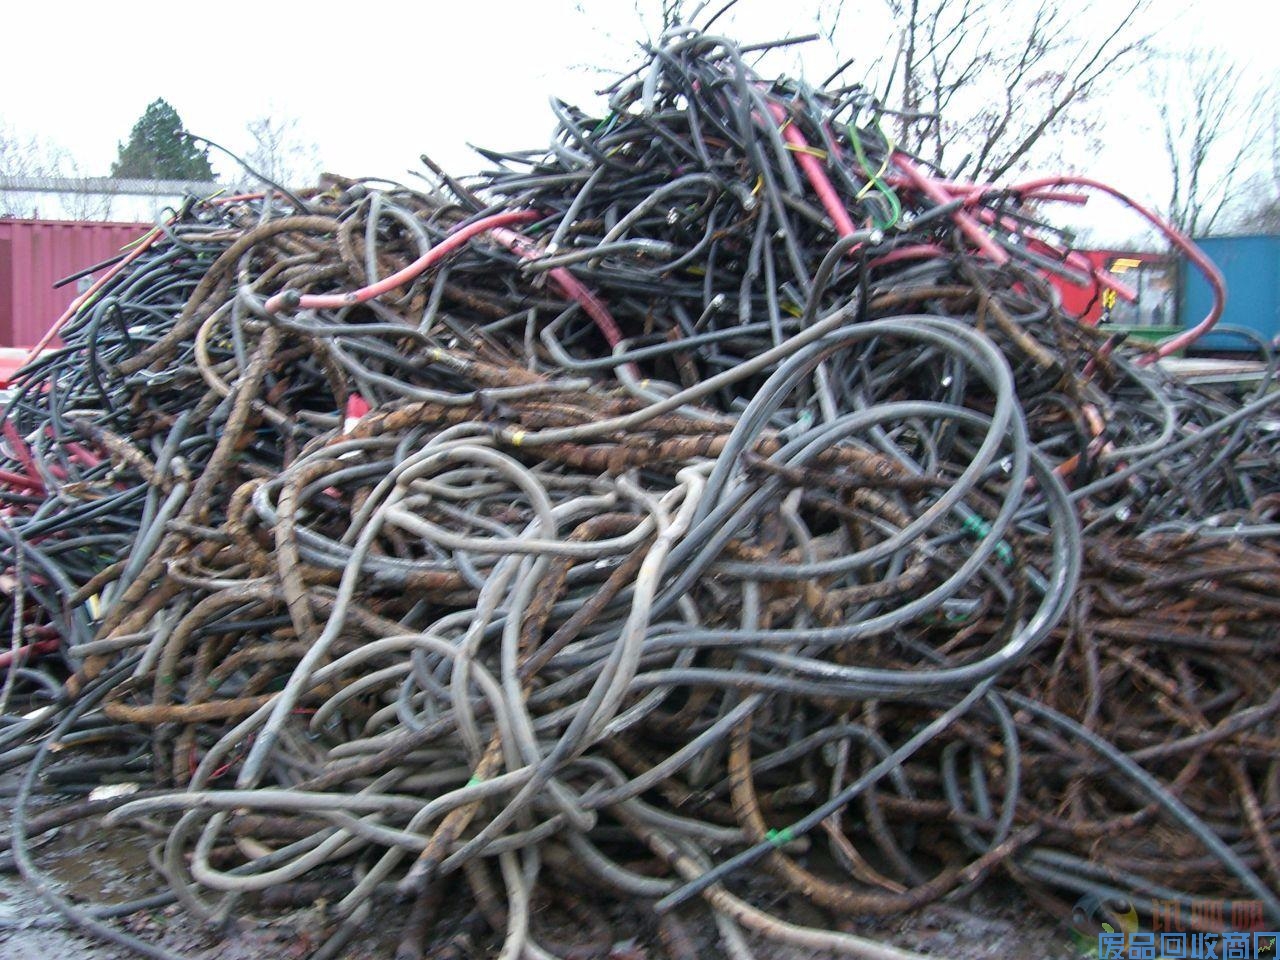 齐齐哈尔市通信电缆回收 - 今日电缆回收多少钱